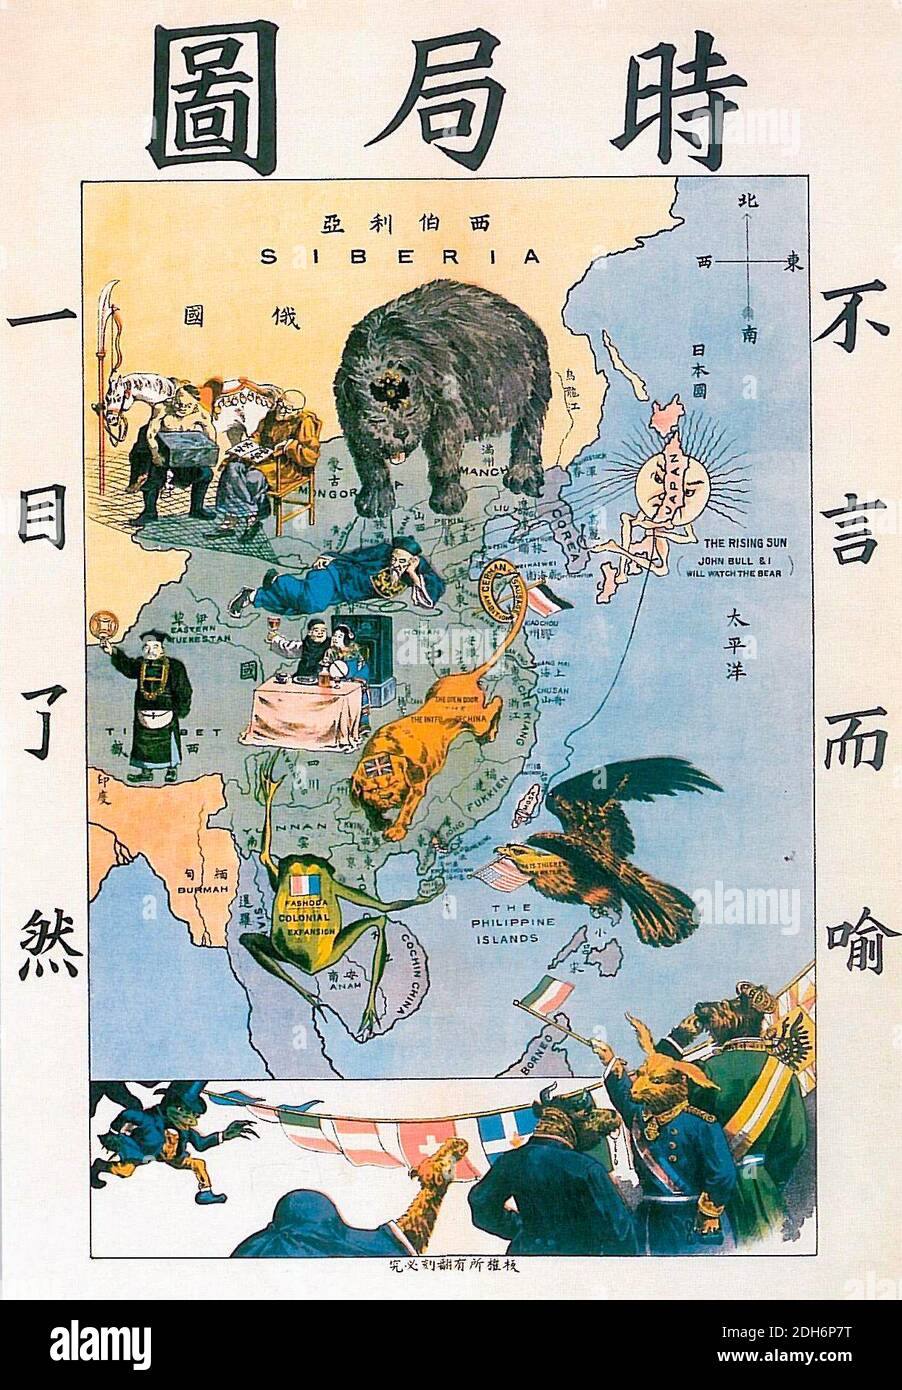 La situation en extrême-Orient - l'auteur Tse Tsan-tai, dépeint sous forme symbolique les puissances occidentales qui empiètent sur la Chine à la fin du XIXe siècle. À gauche d'être clair d'un coup d'œil, à droite, évident. L'ours représentant la Russie s'inonde du nord, la tête de boudogue avec un corps de lion représentant le Royaume-Uni est dans le sud de la Chine, avec sa queue autour de la péninsule de Shantung (la colonie anglaise de Wehai était le siège du boudogue britannique dans la première version de la bande dessinée), La grenouille gauloise se trouve en Asie du Sud-est, avec l'inscription « Fashoda », en référence à Fashoda Banque D'Images